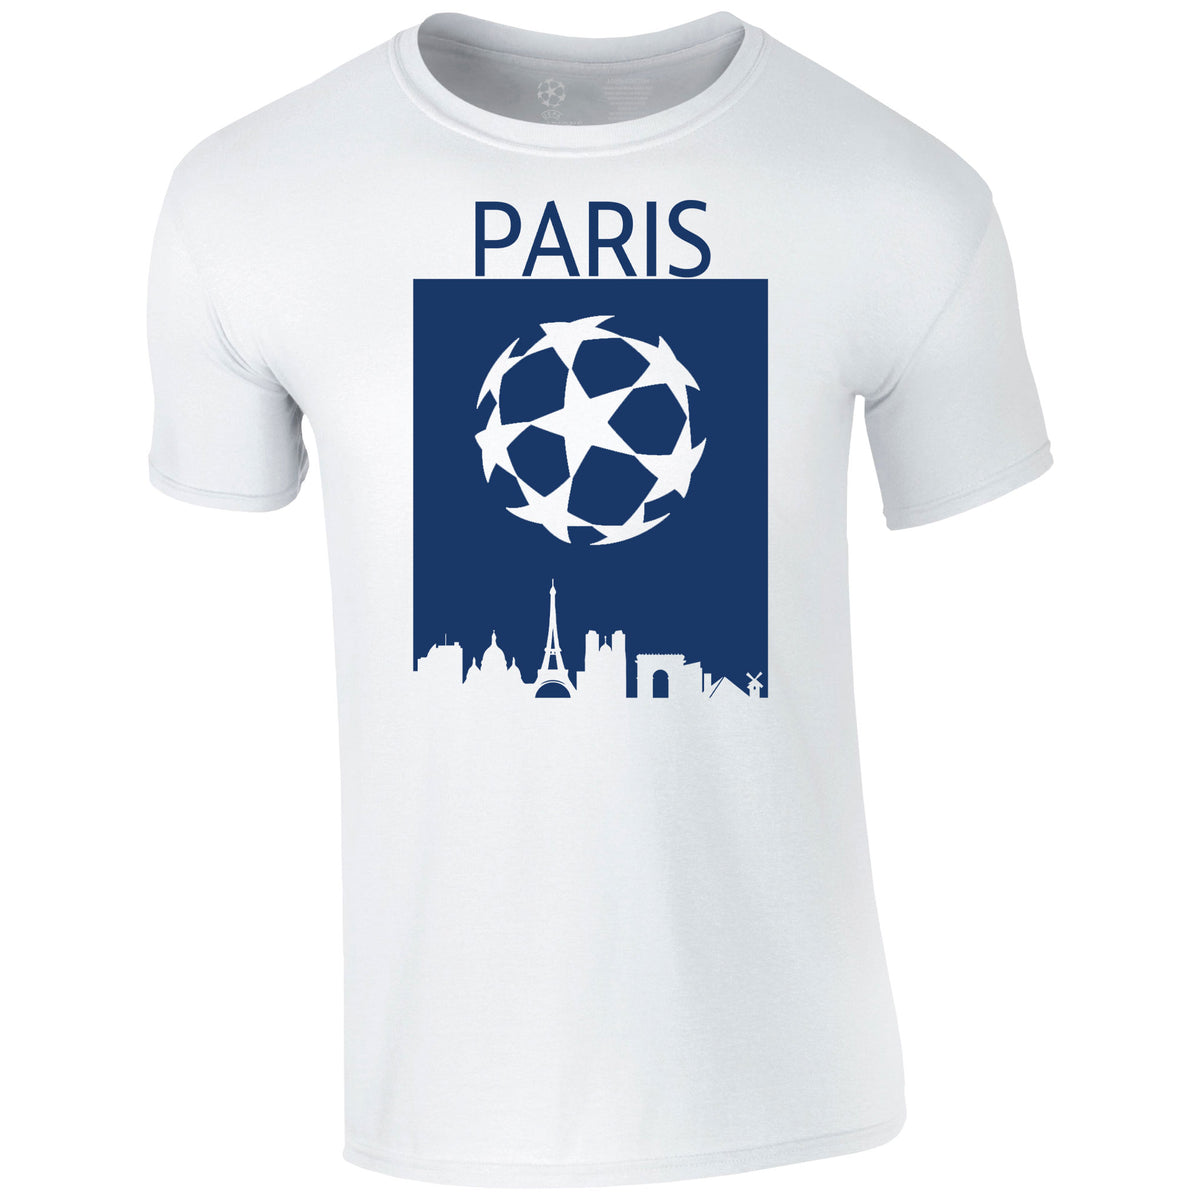 Champions League Paris City Skyline T-Shirt White